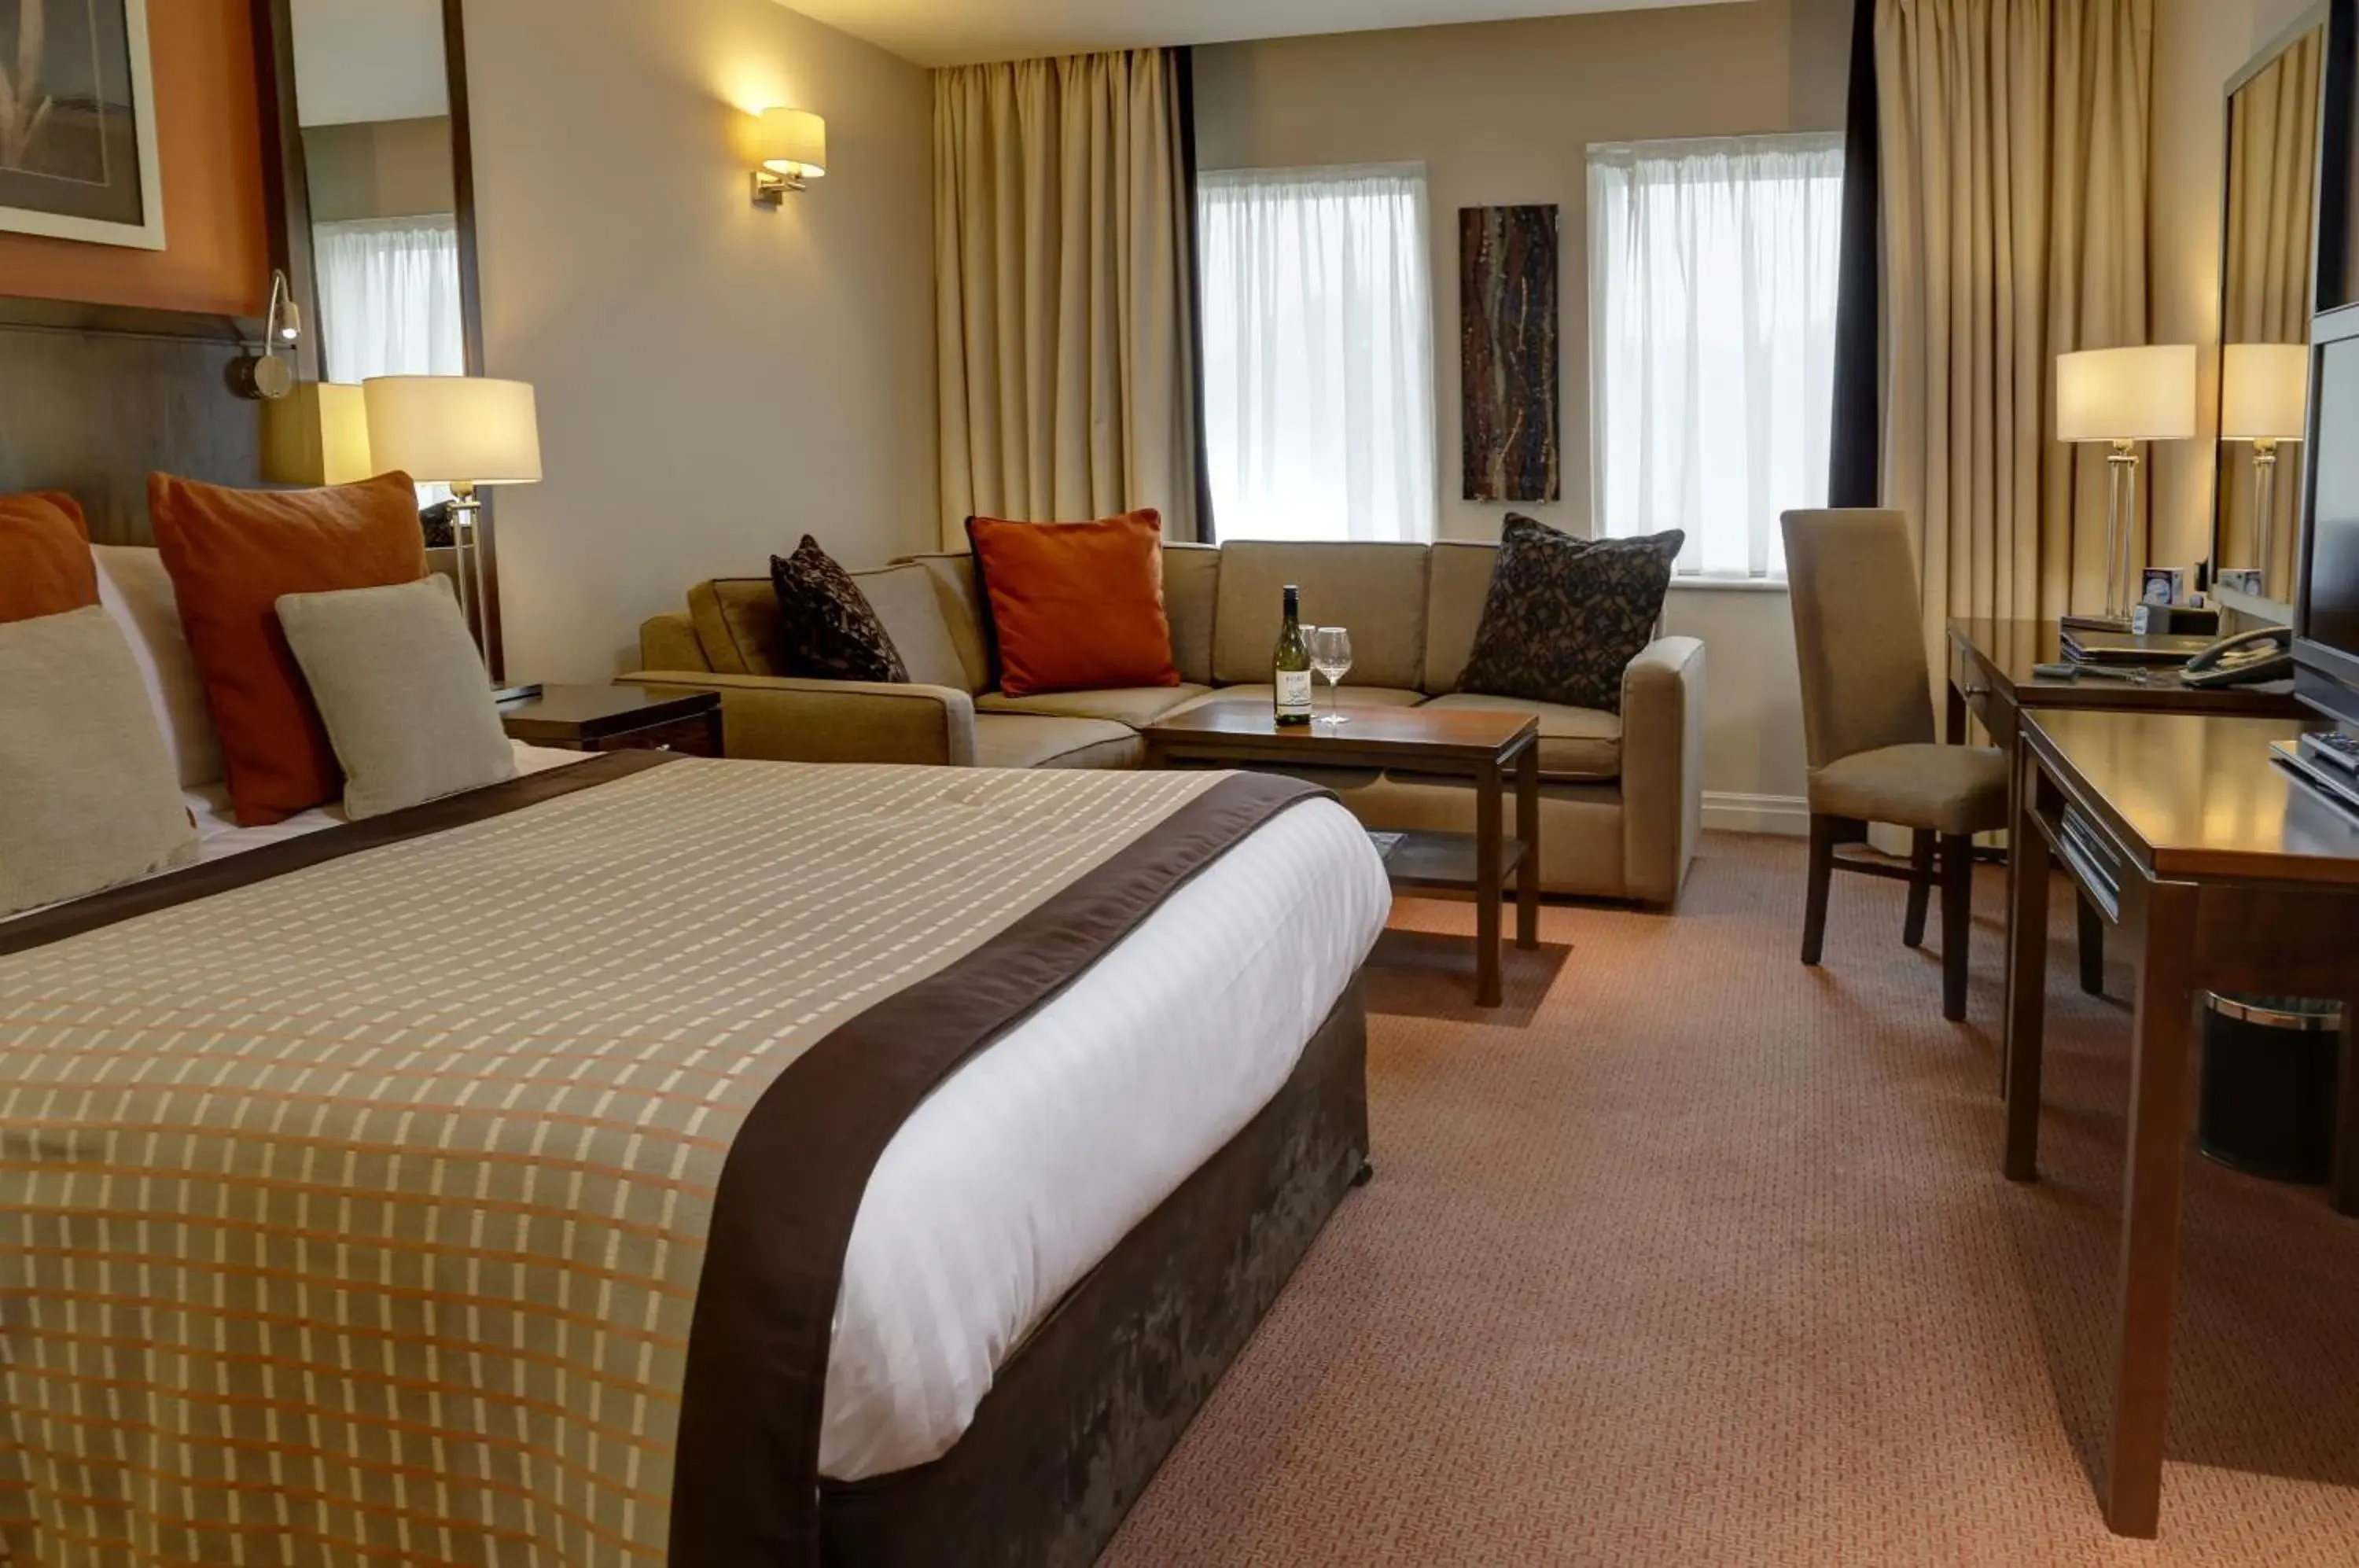 Bedroom, Bed in Best Western Plus Milford Hotel